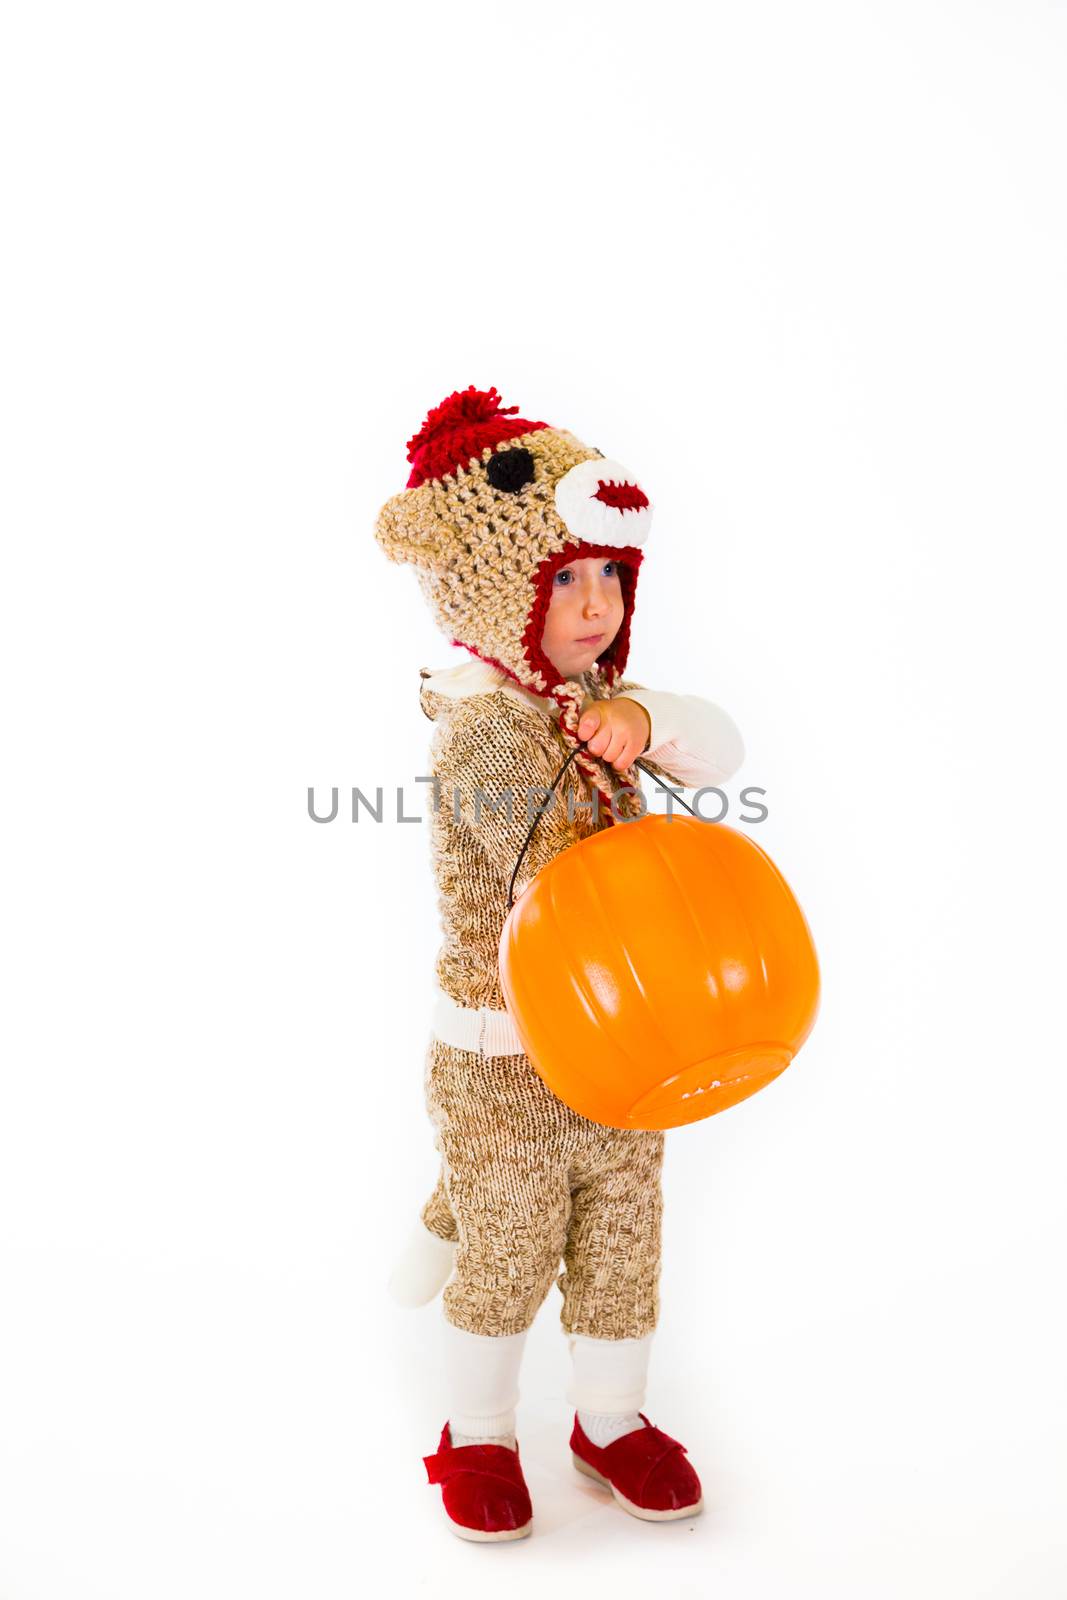 Sock Monkey Halloween Costume by joshuaraineyphotography